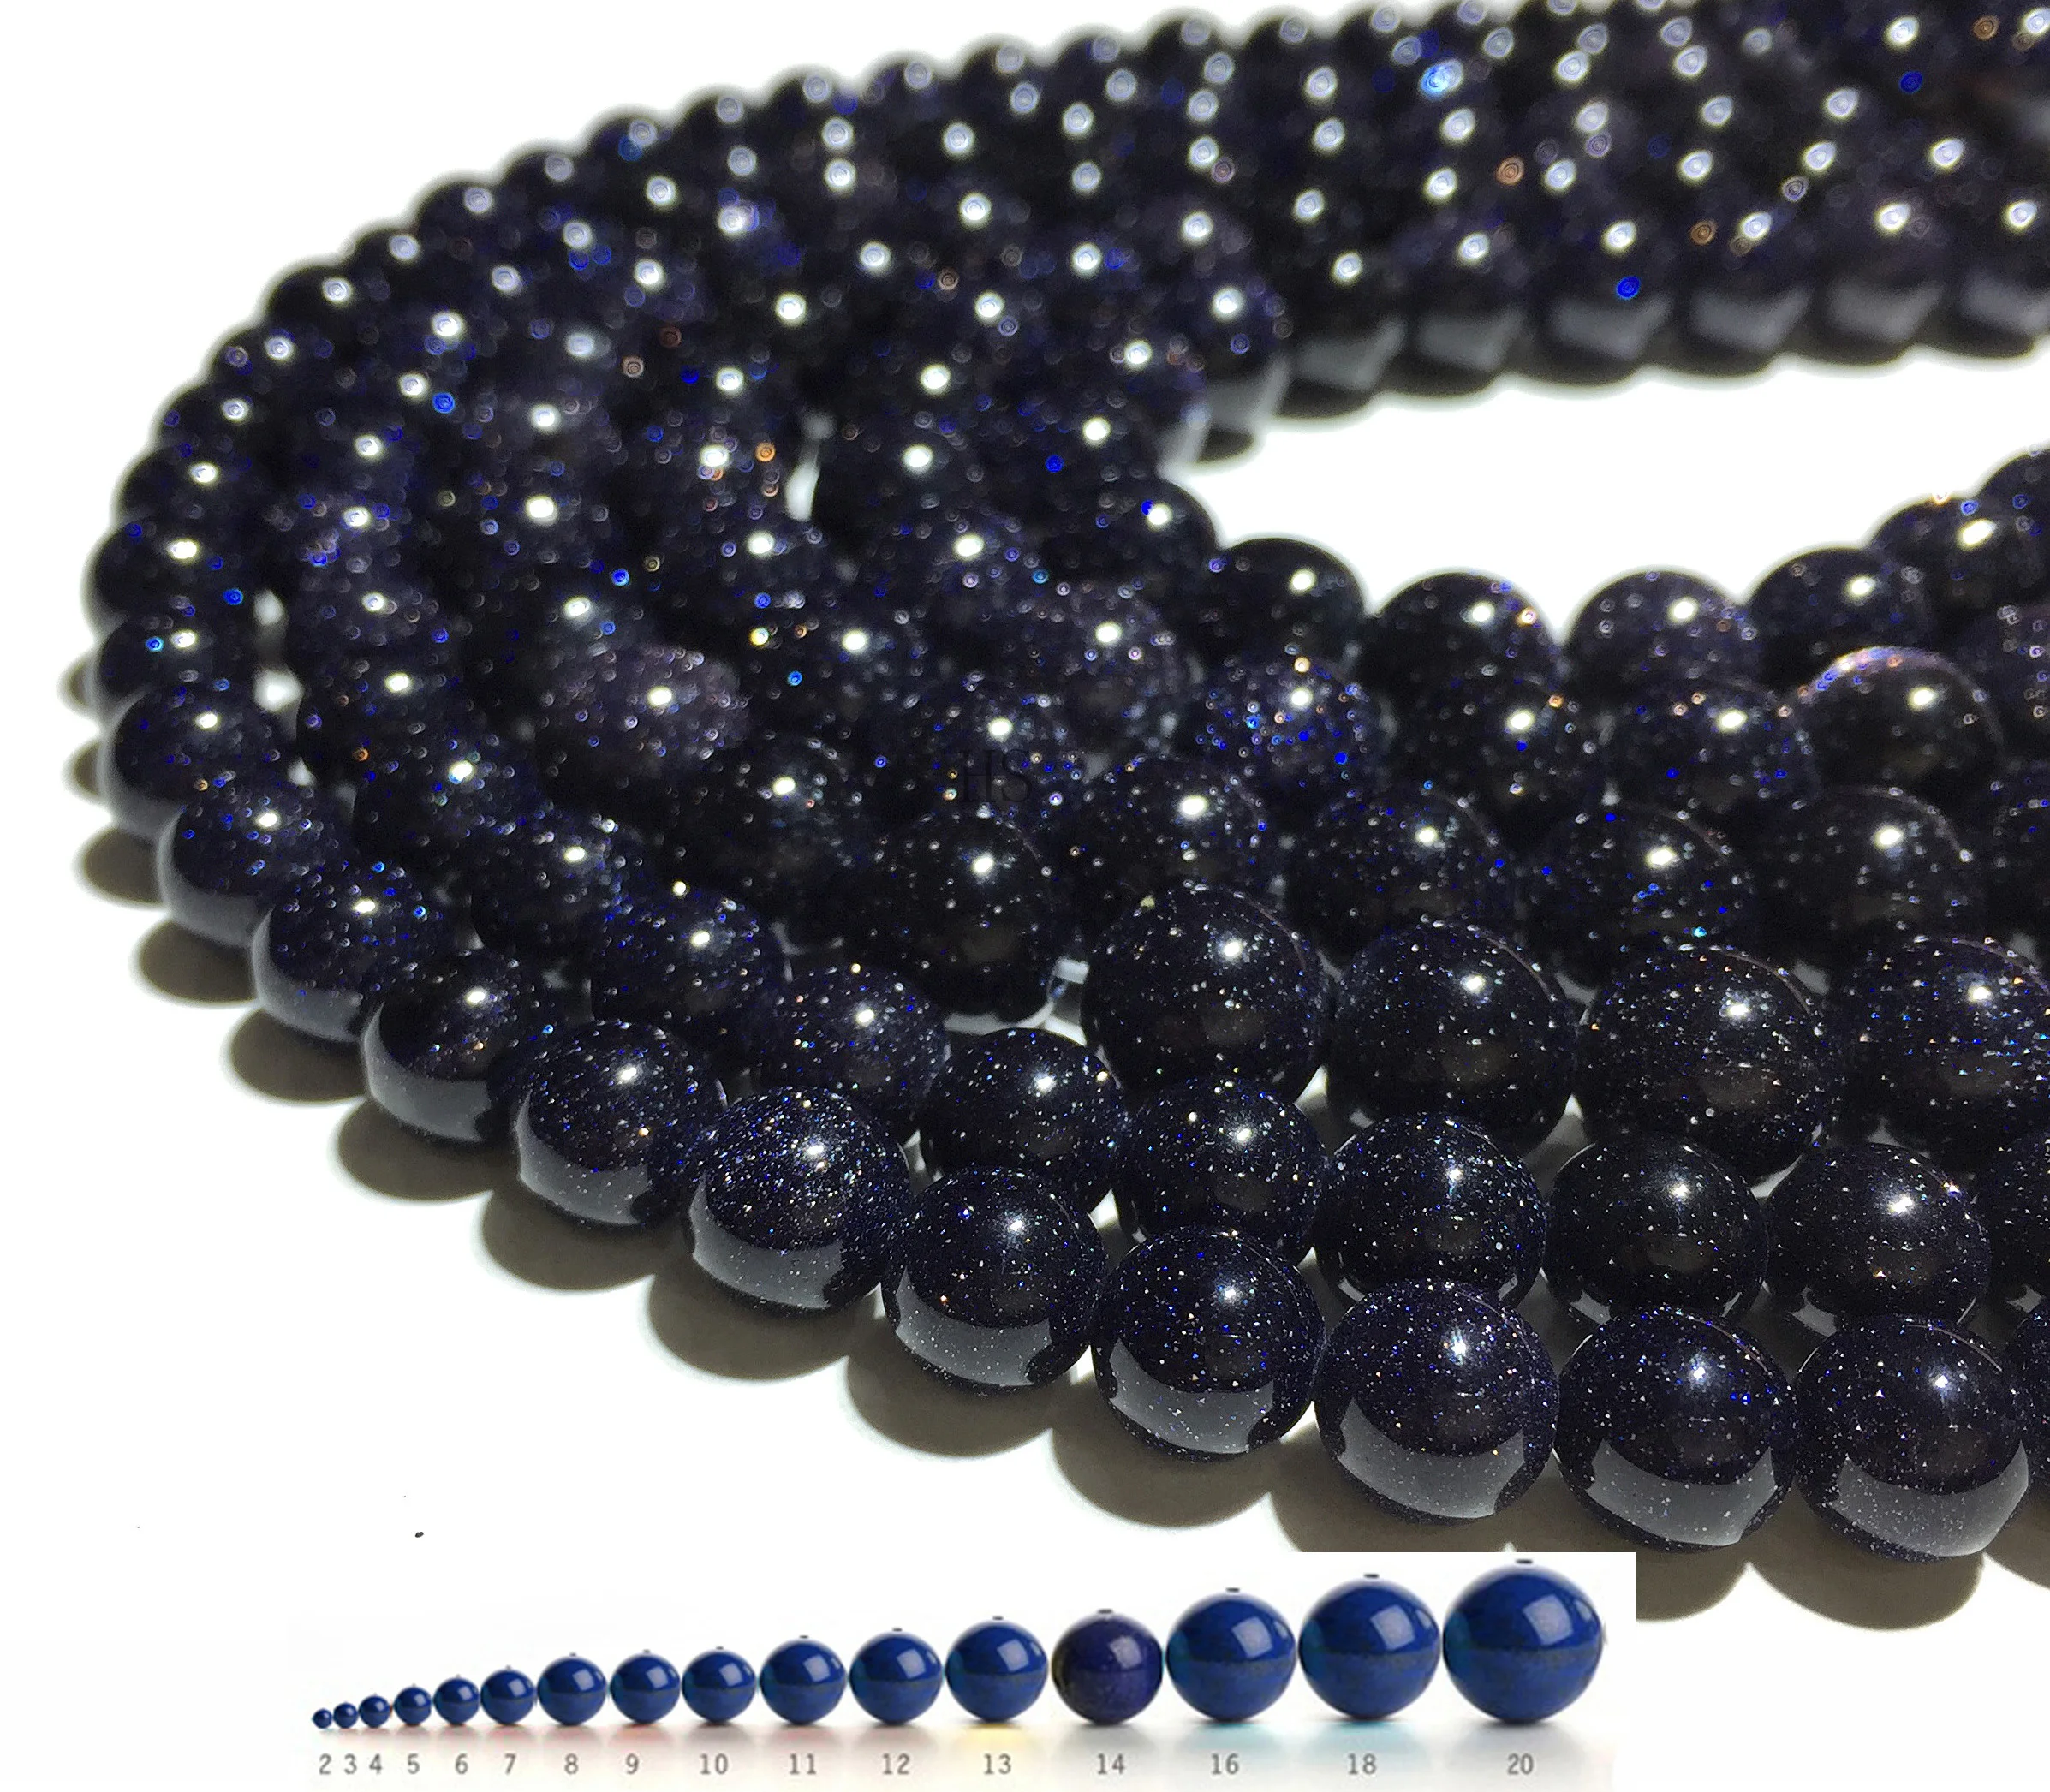 Neuf 4 6 8 10 12 mm naturel bleu sable Spot Round Gemstone Loose Spacer Beads Stone 